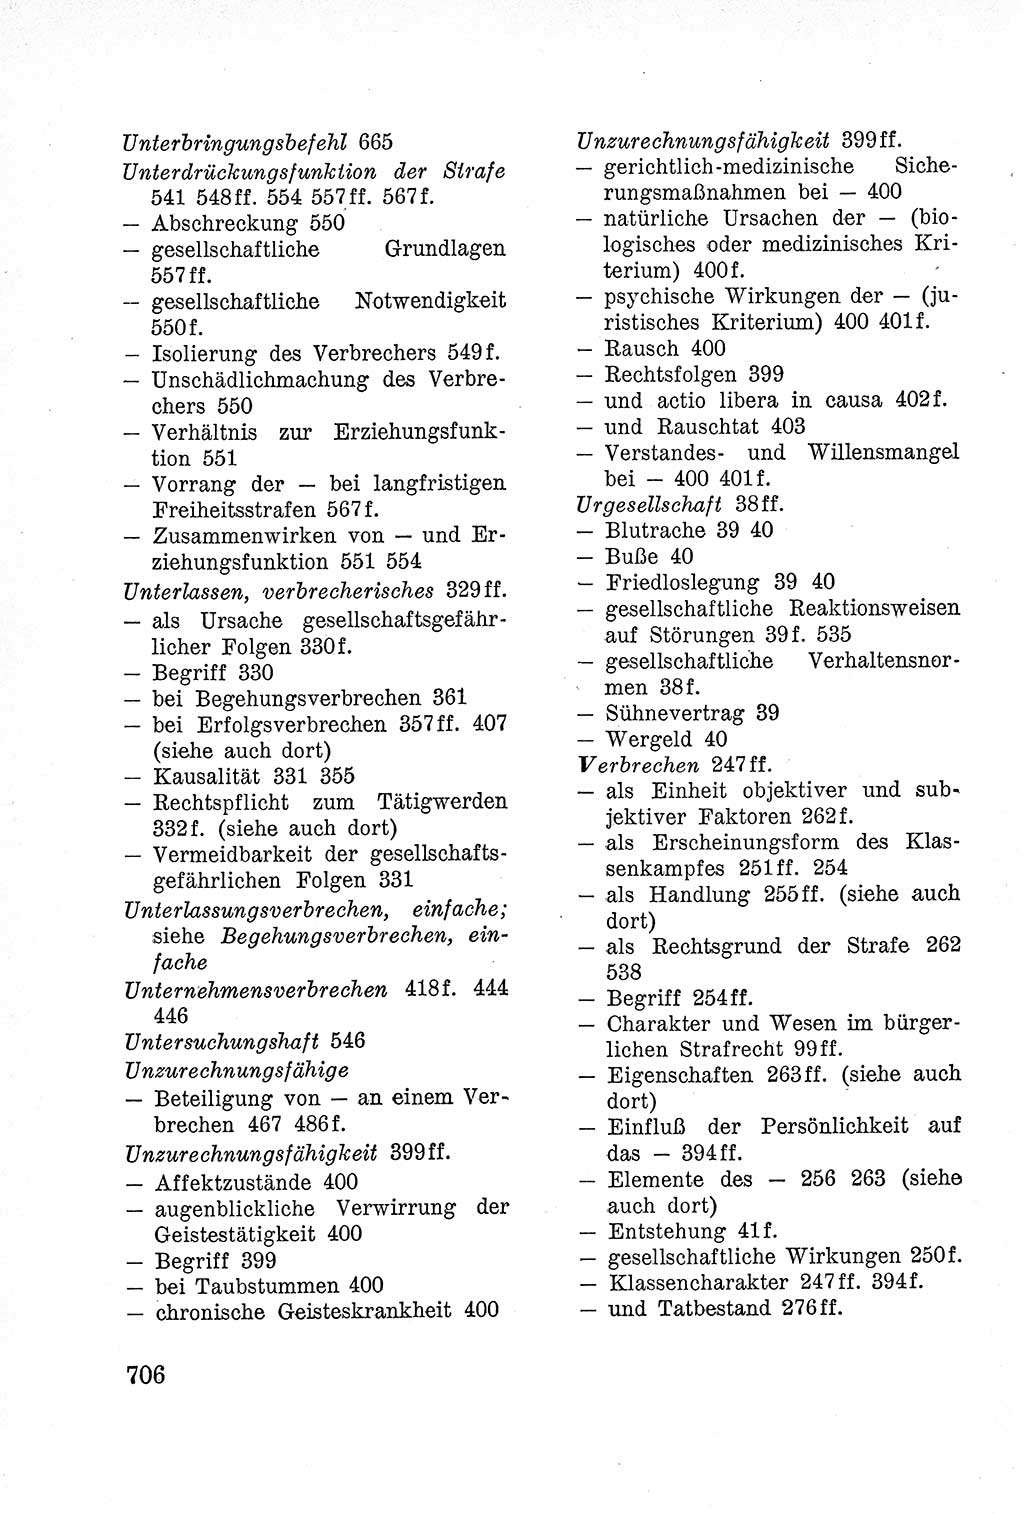 Lehrbuch des Strafrechts der Deutschen Demokratischen Republik (DDR), Allgemeiner Teil 1957, Seite 706 (Lb. Strafr. DDR AT 1957, S. 706)